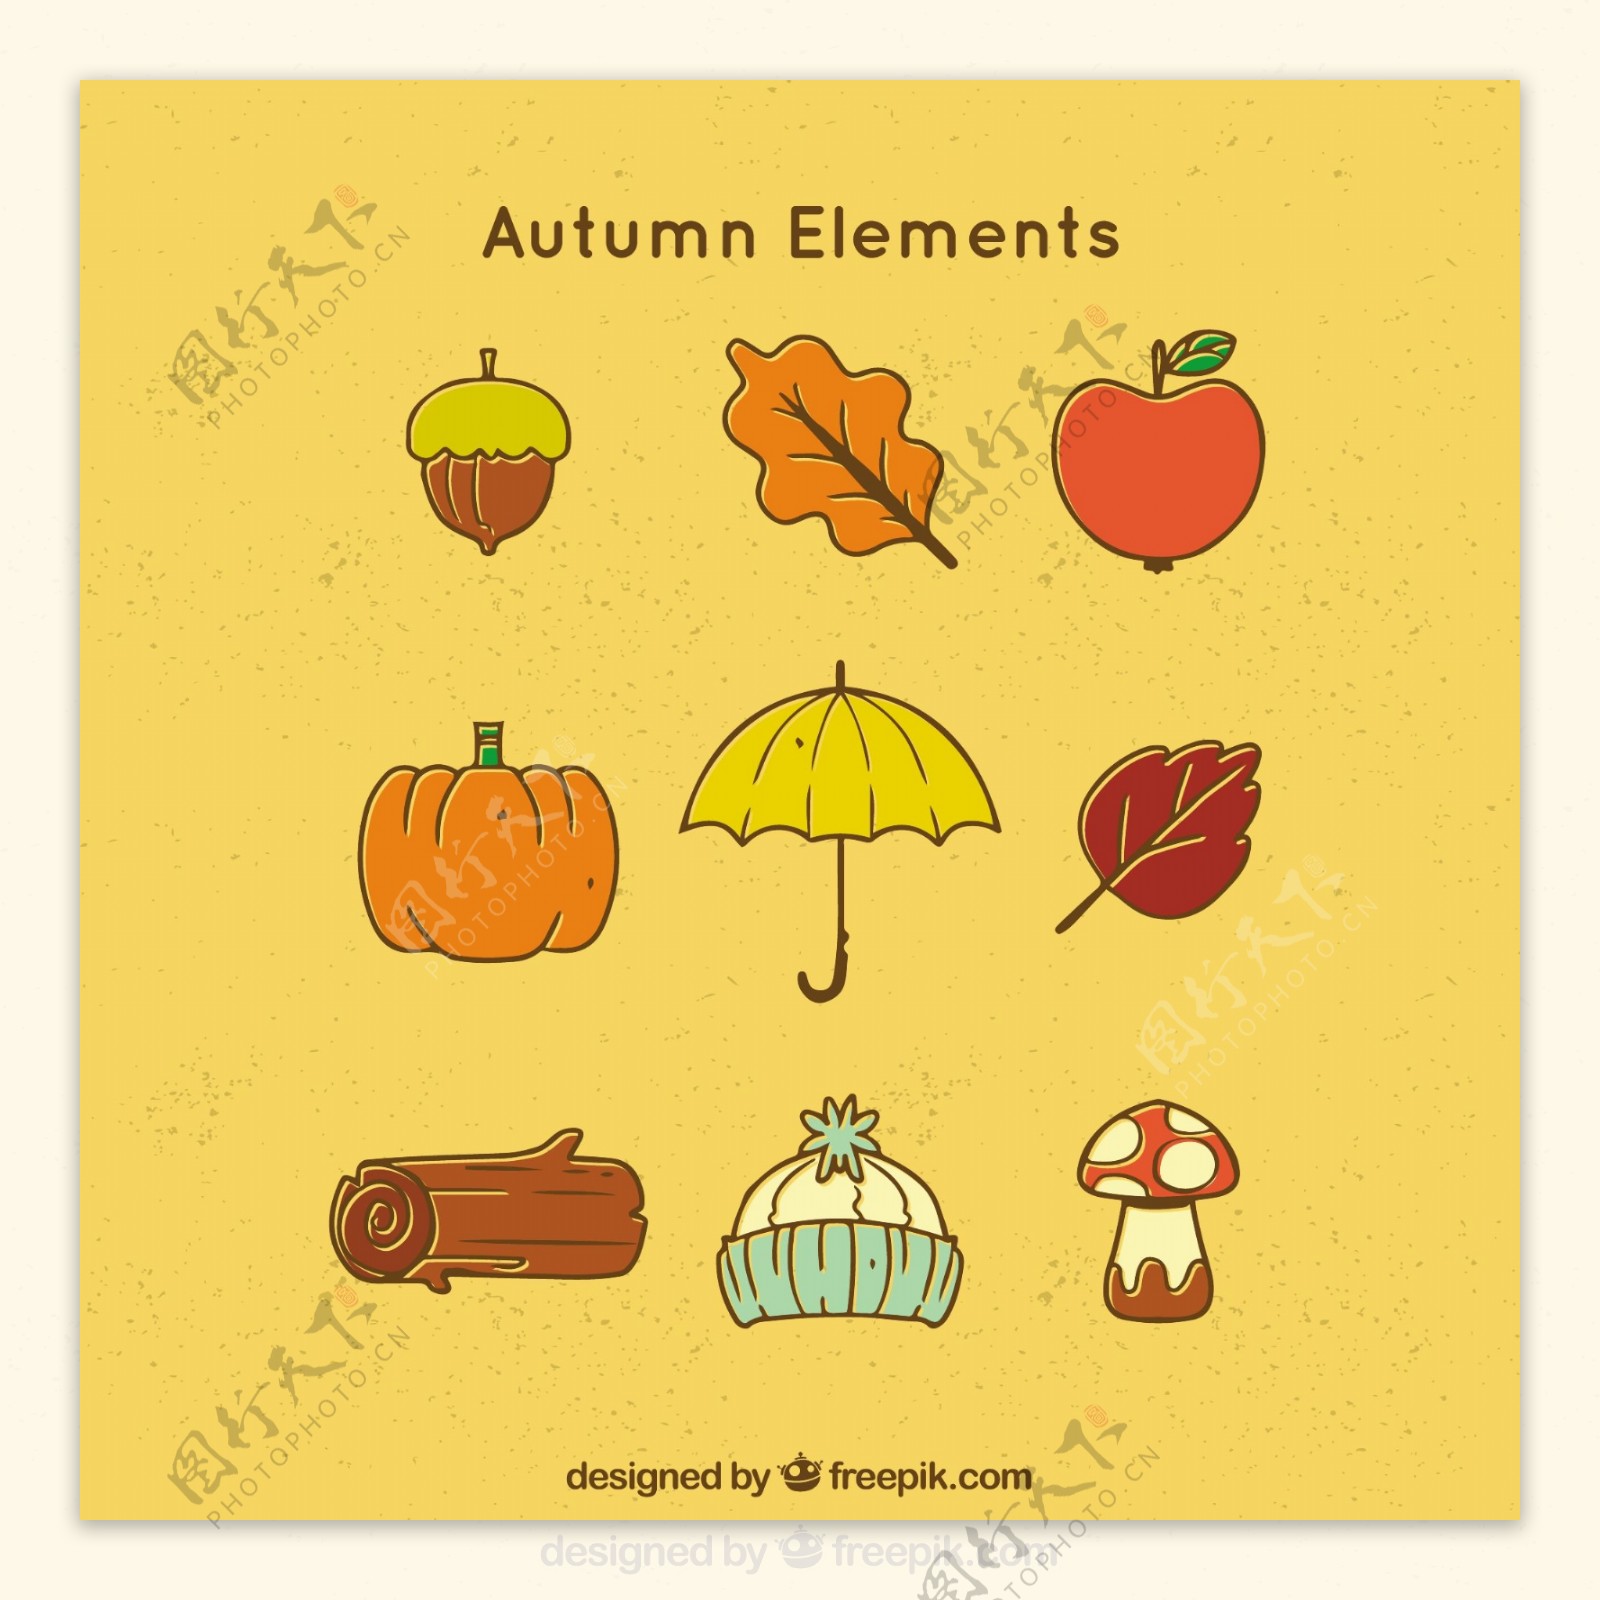 简单风格的典型秋天元素